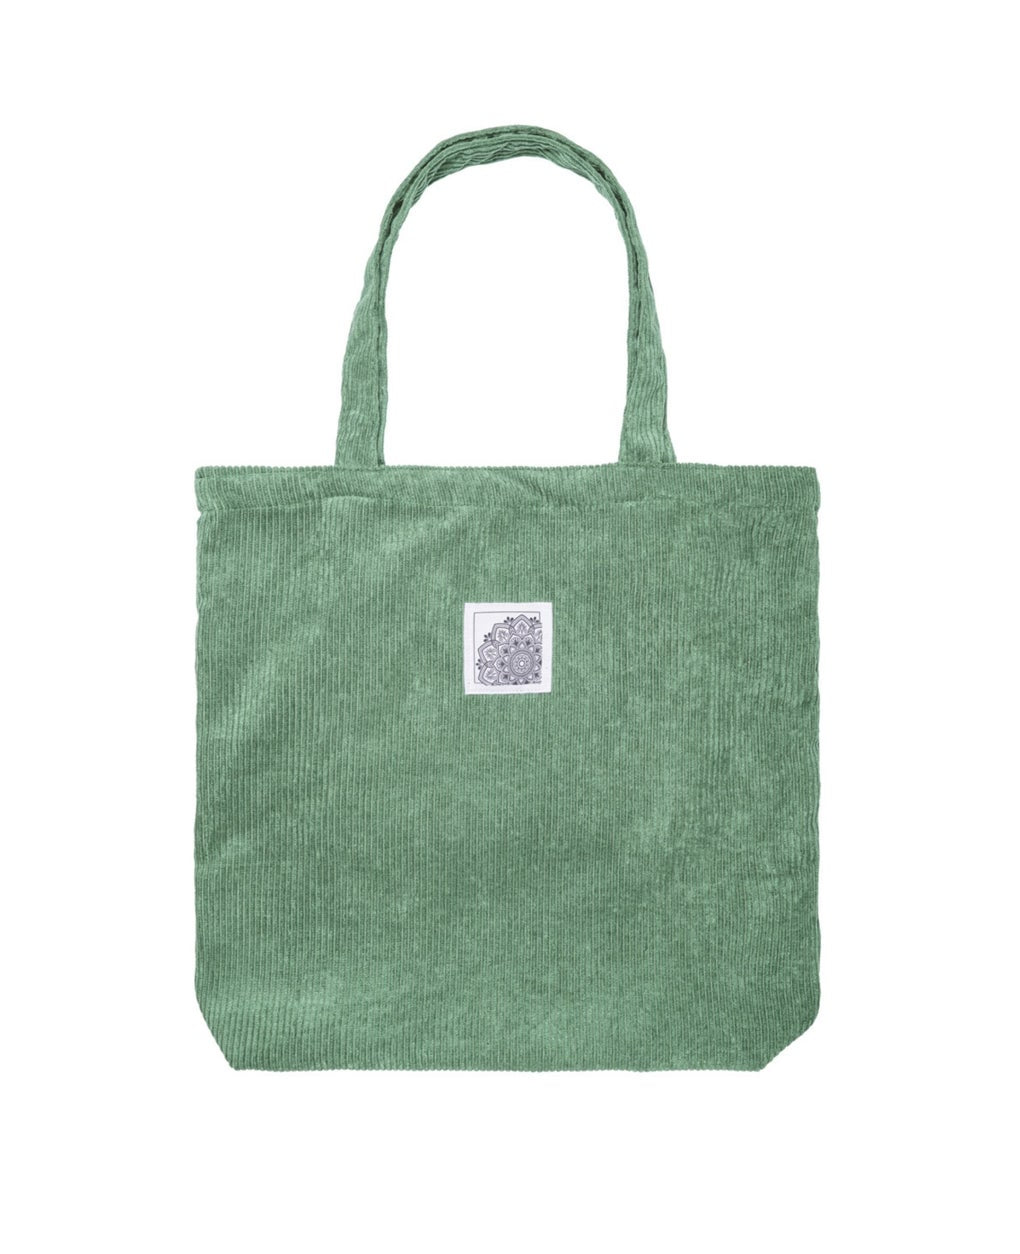 Corduroy tote bag - groen